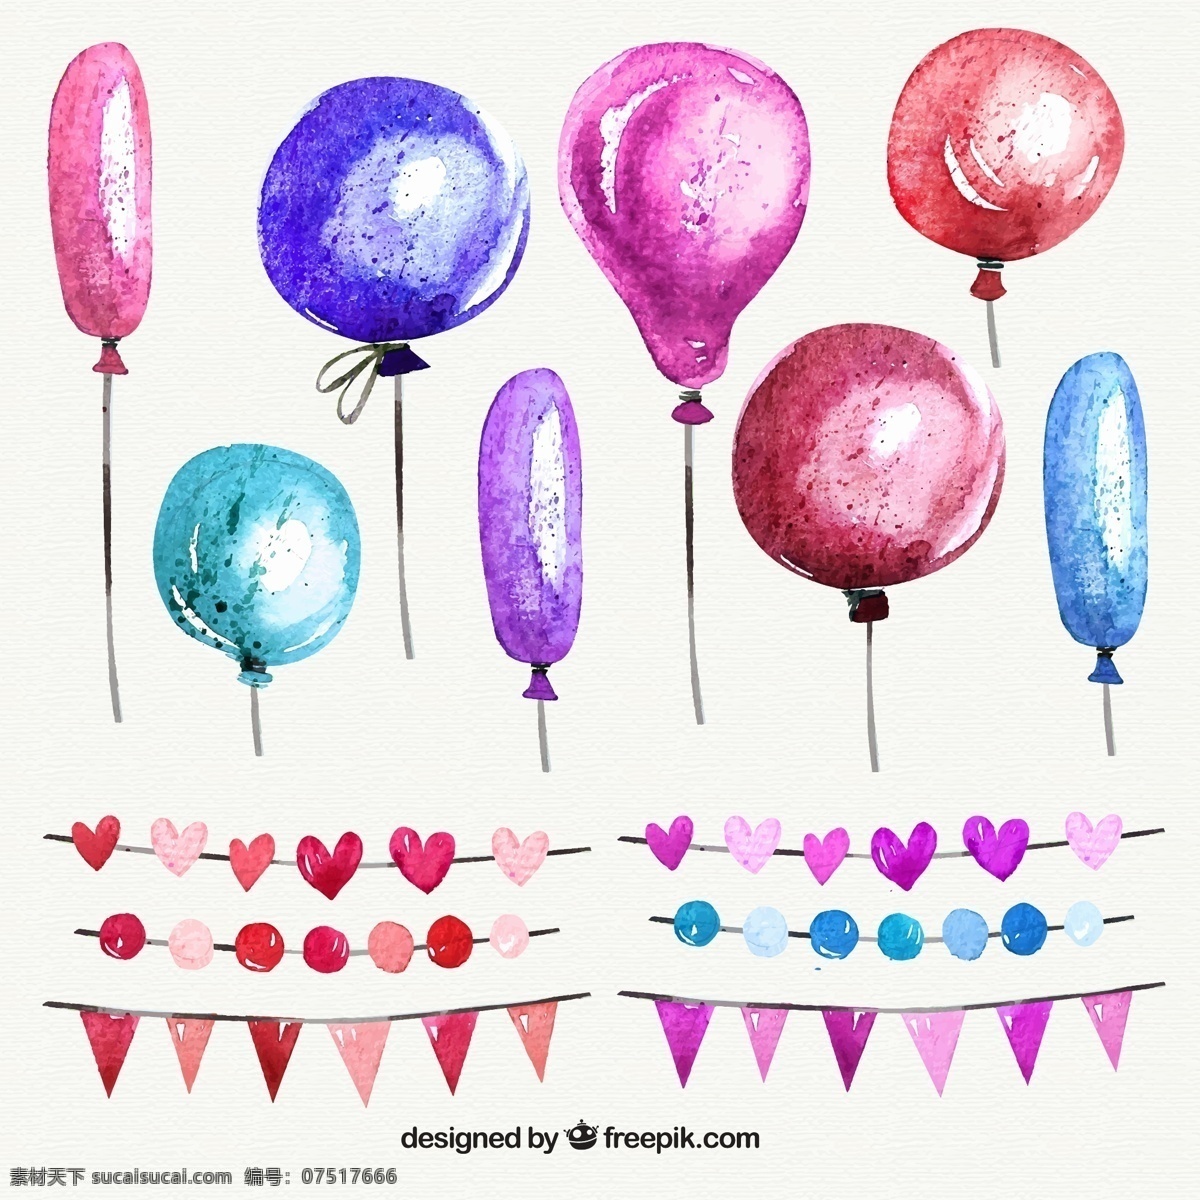 彩色 气球 款 节日 拉 旗 矢量 三角拉旗 水彩 爱心 派对 装饰物 拉旗